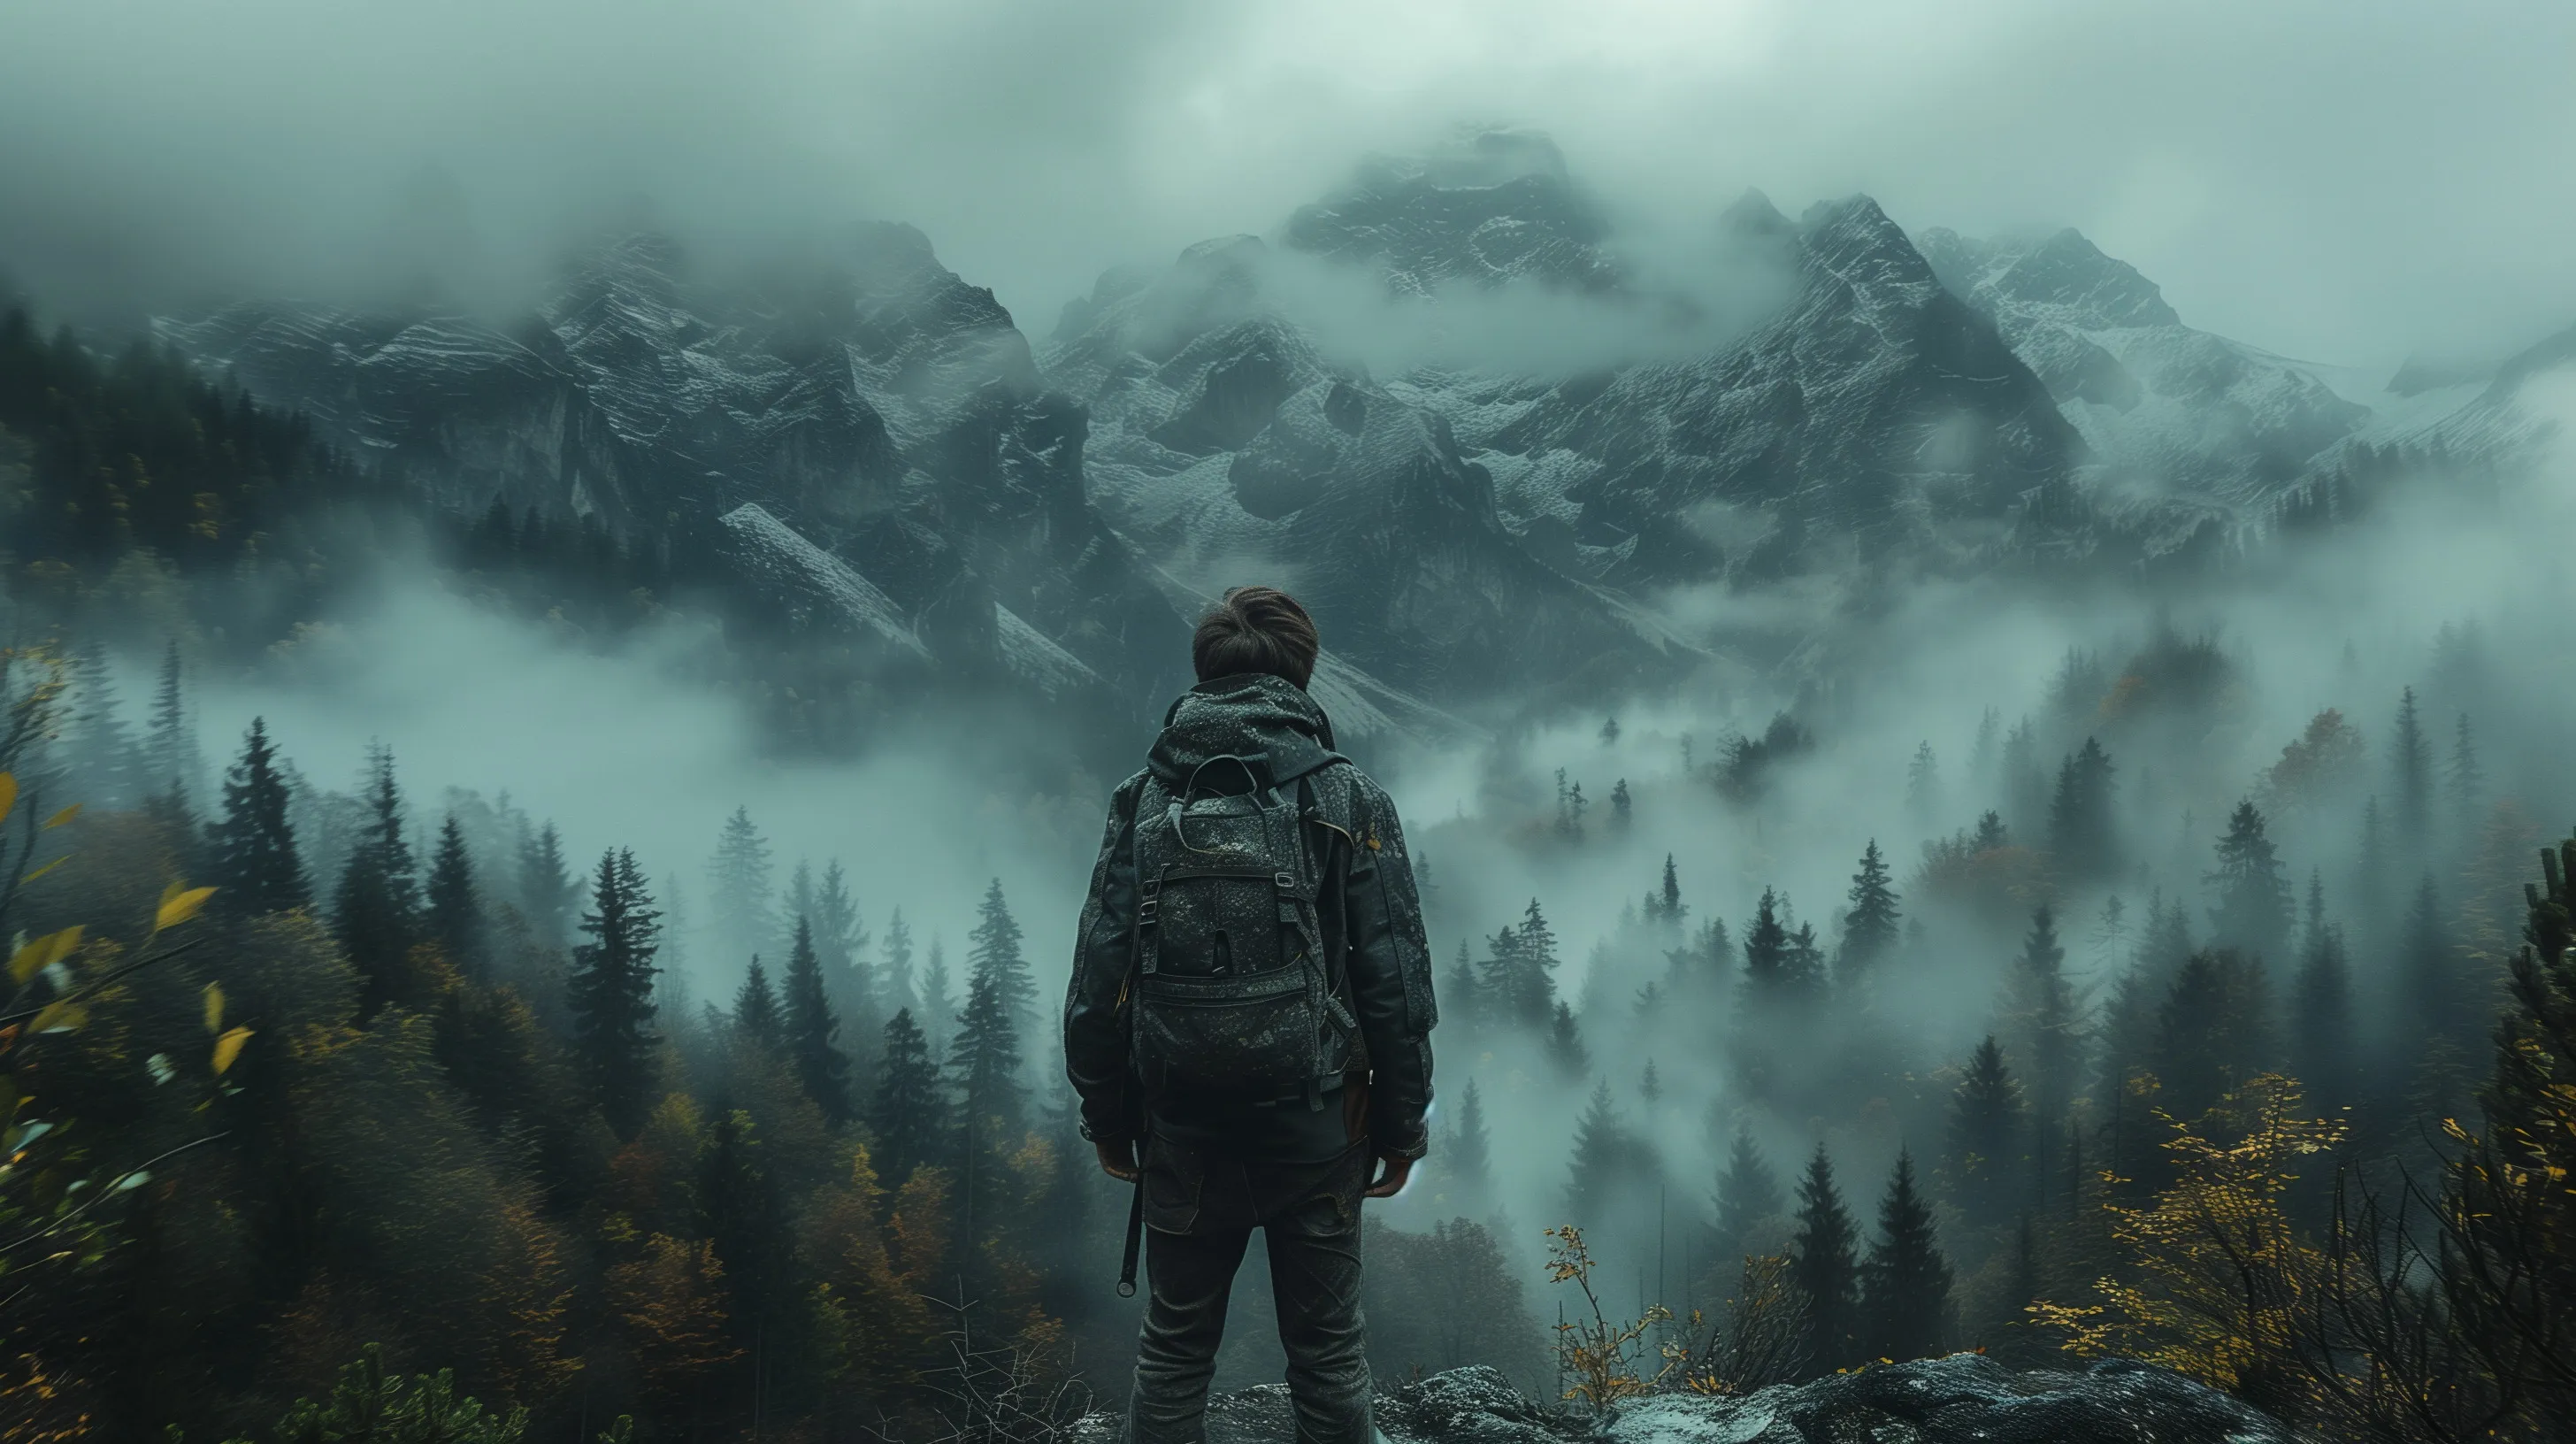 Frasi per riflettere - Un uomo su una montagna che guarda in un bosco avvolto dalla nebbia.